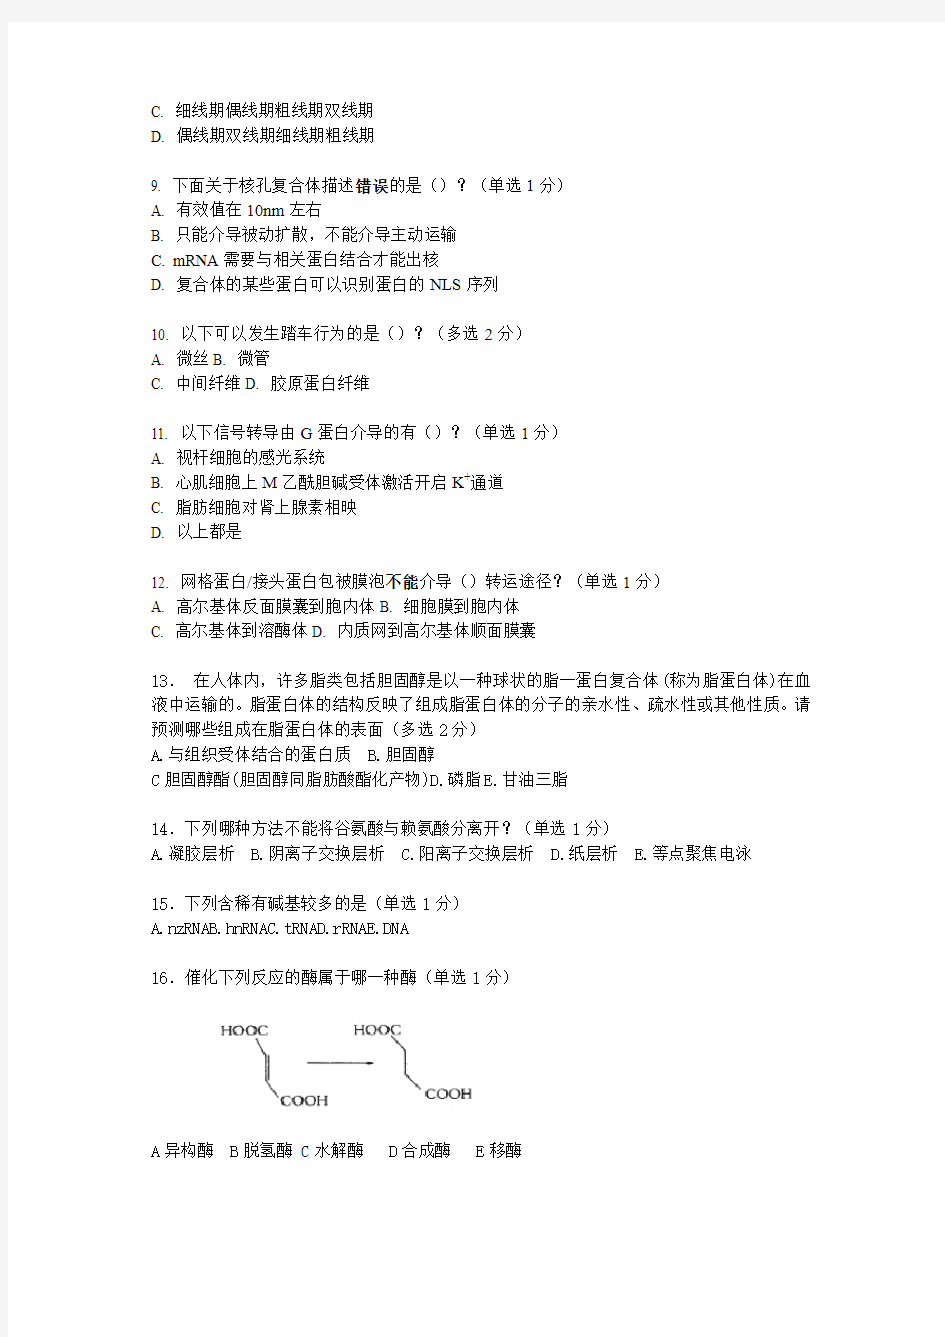 清北学堂2013年五一生物竞赛模拟押题试卷6(李争达)